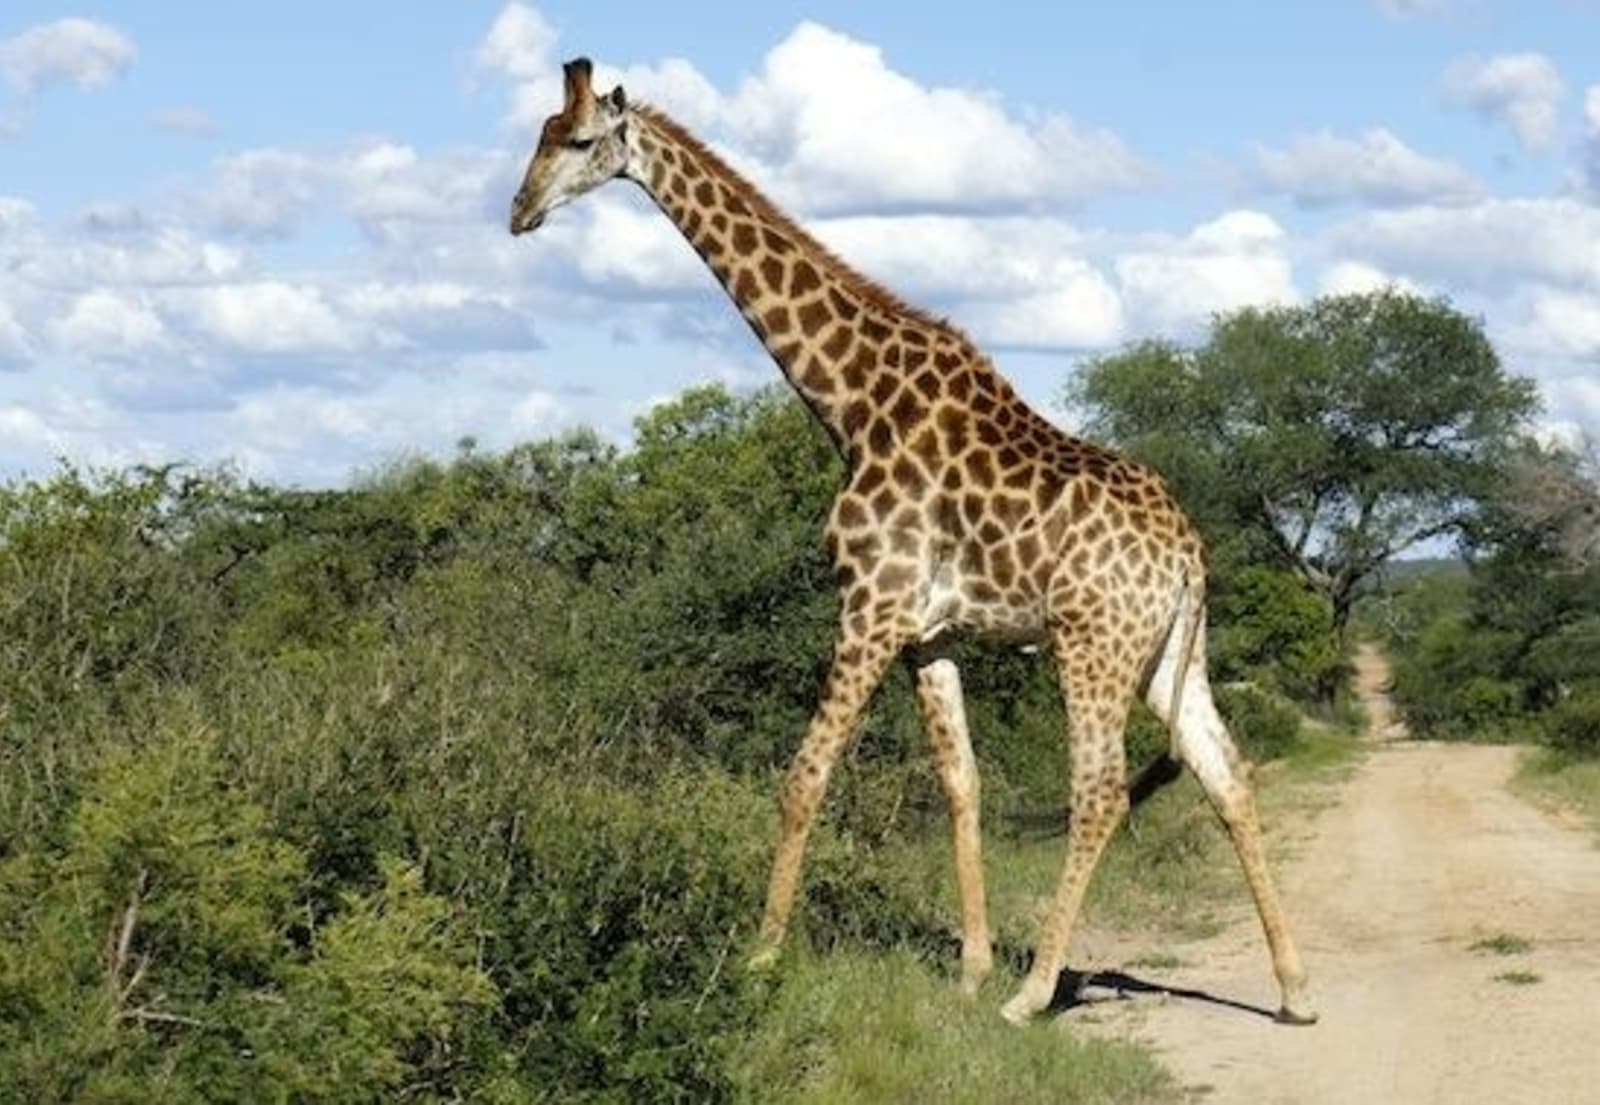 Giraffe-on-safari.jpeg